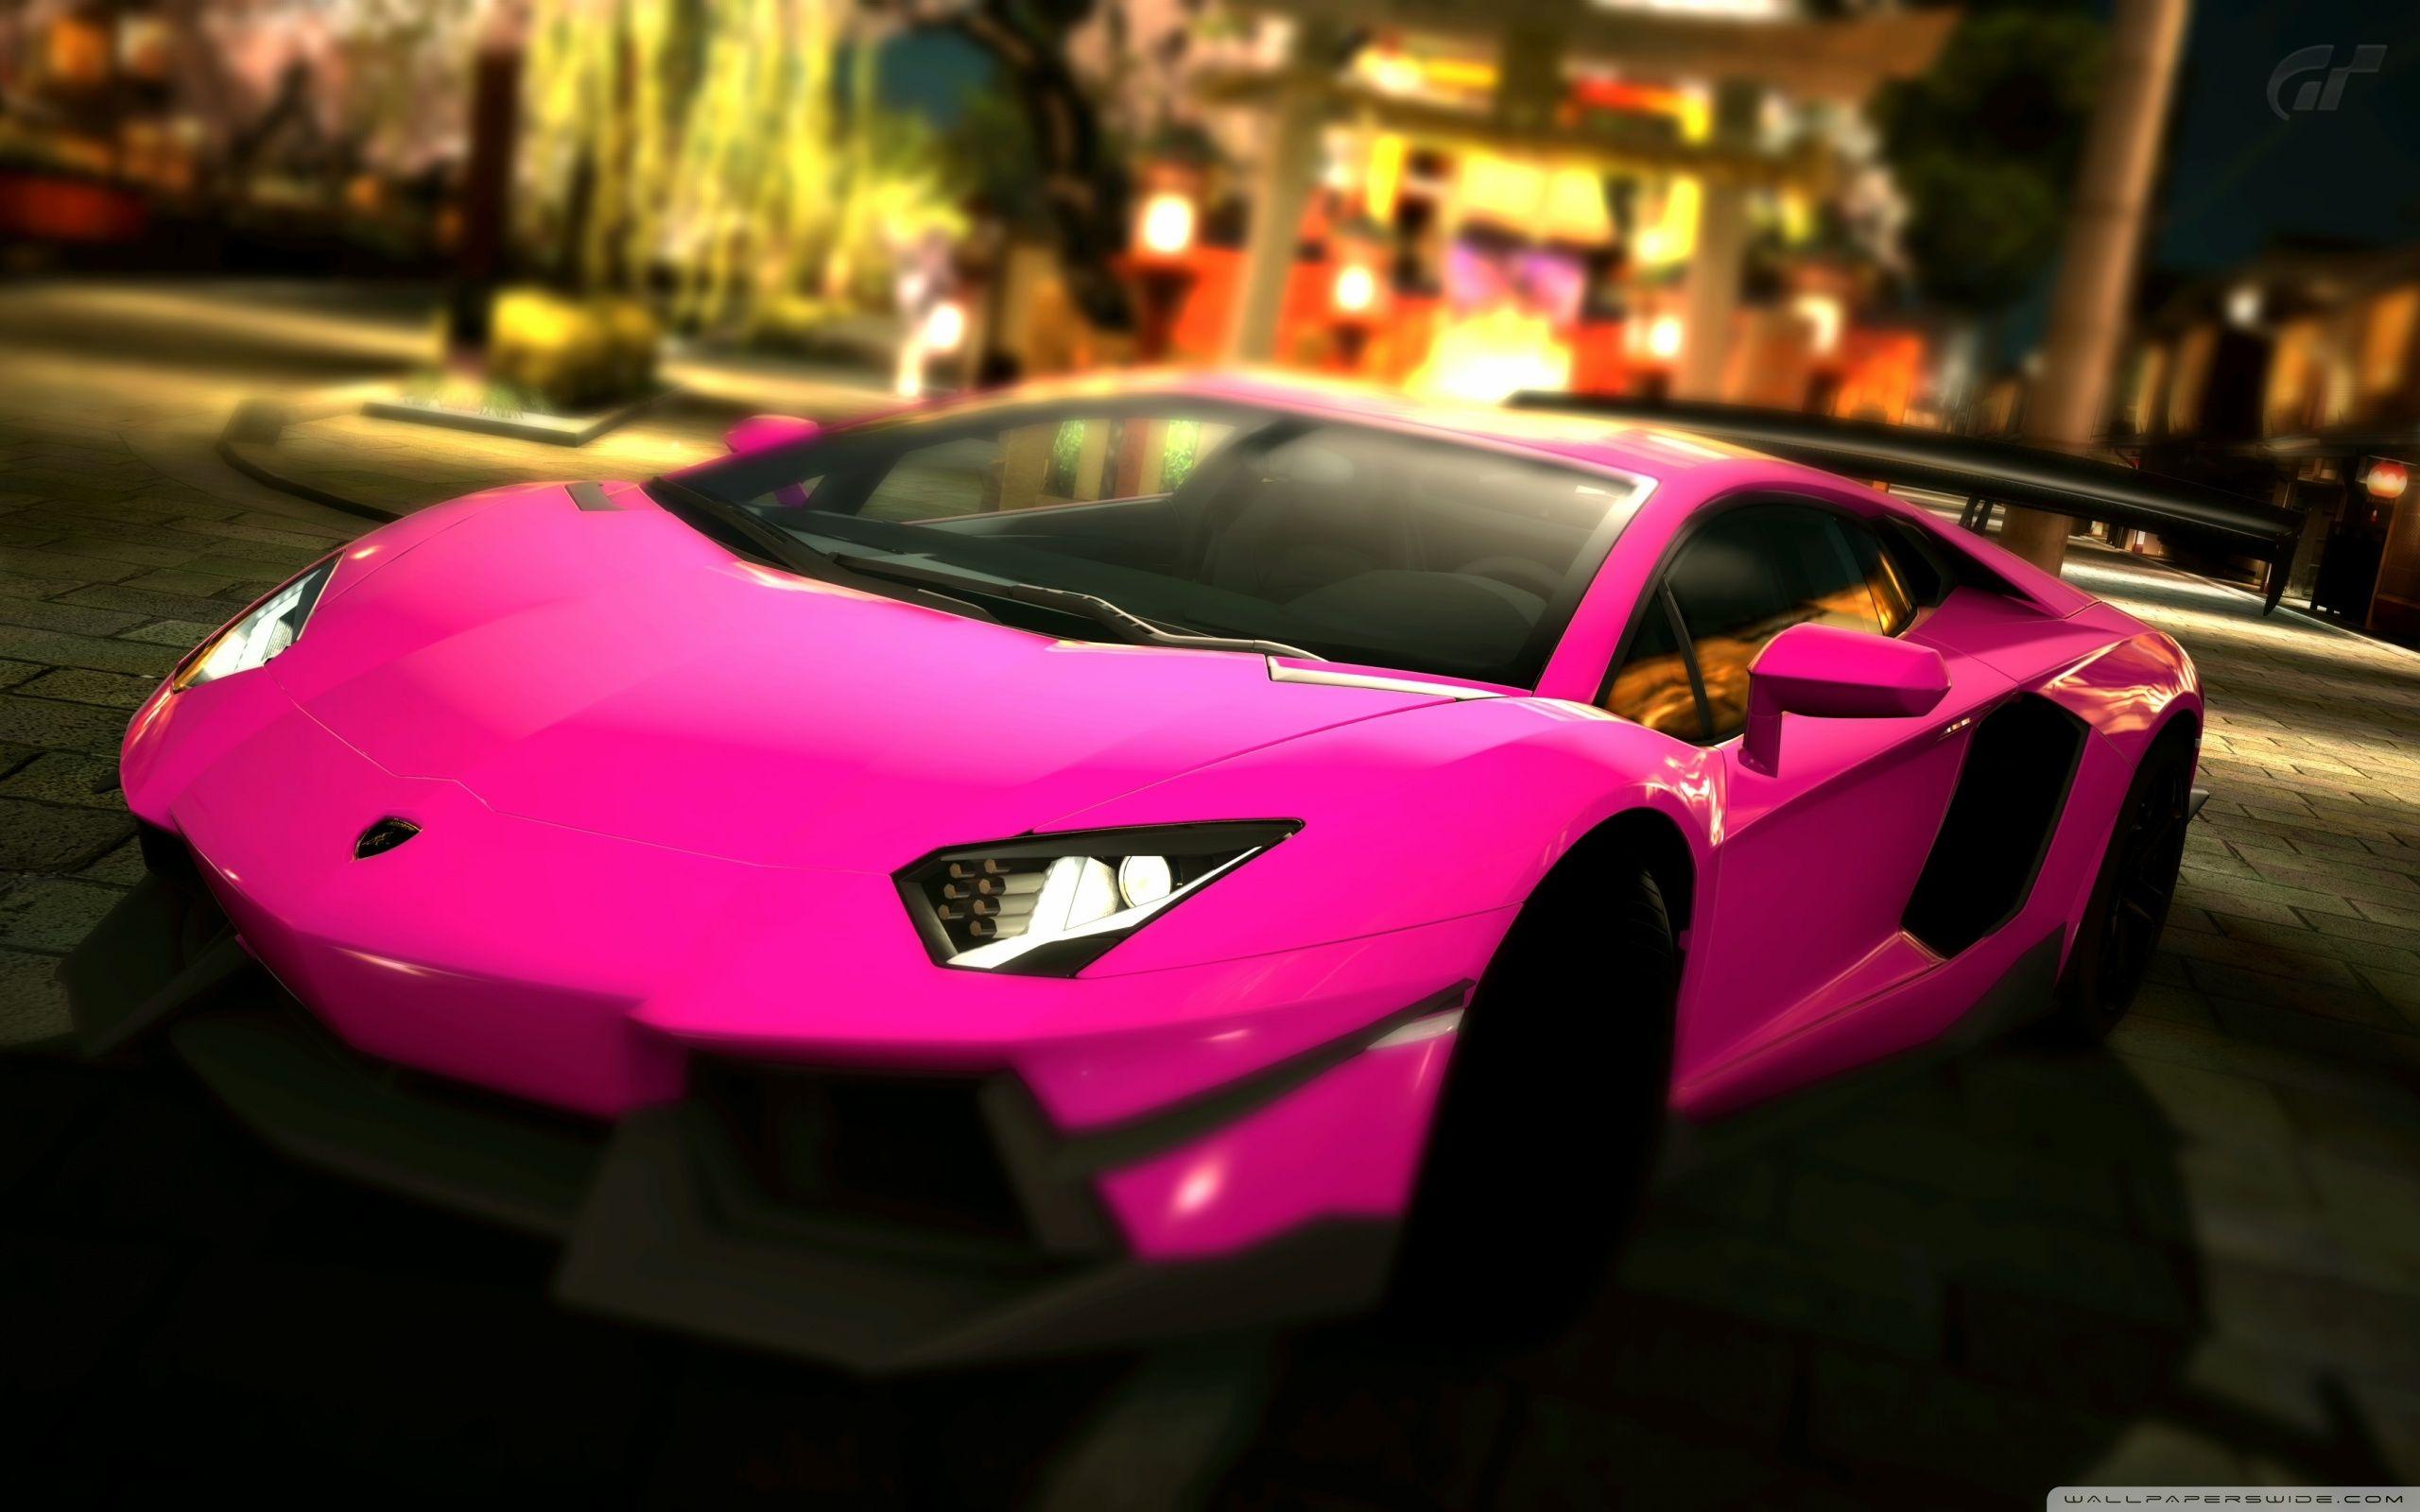 Pink Lamborghini Wallpapers - Top Free